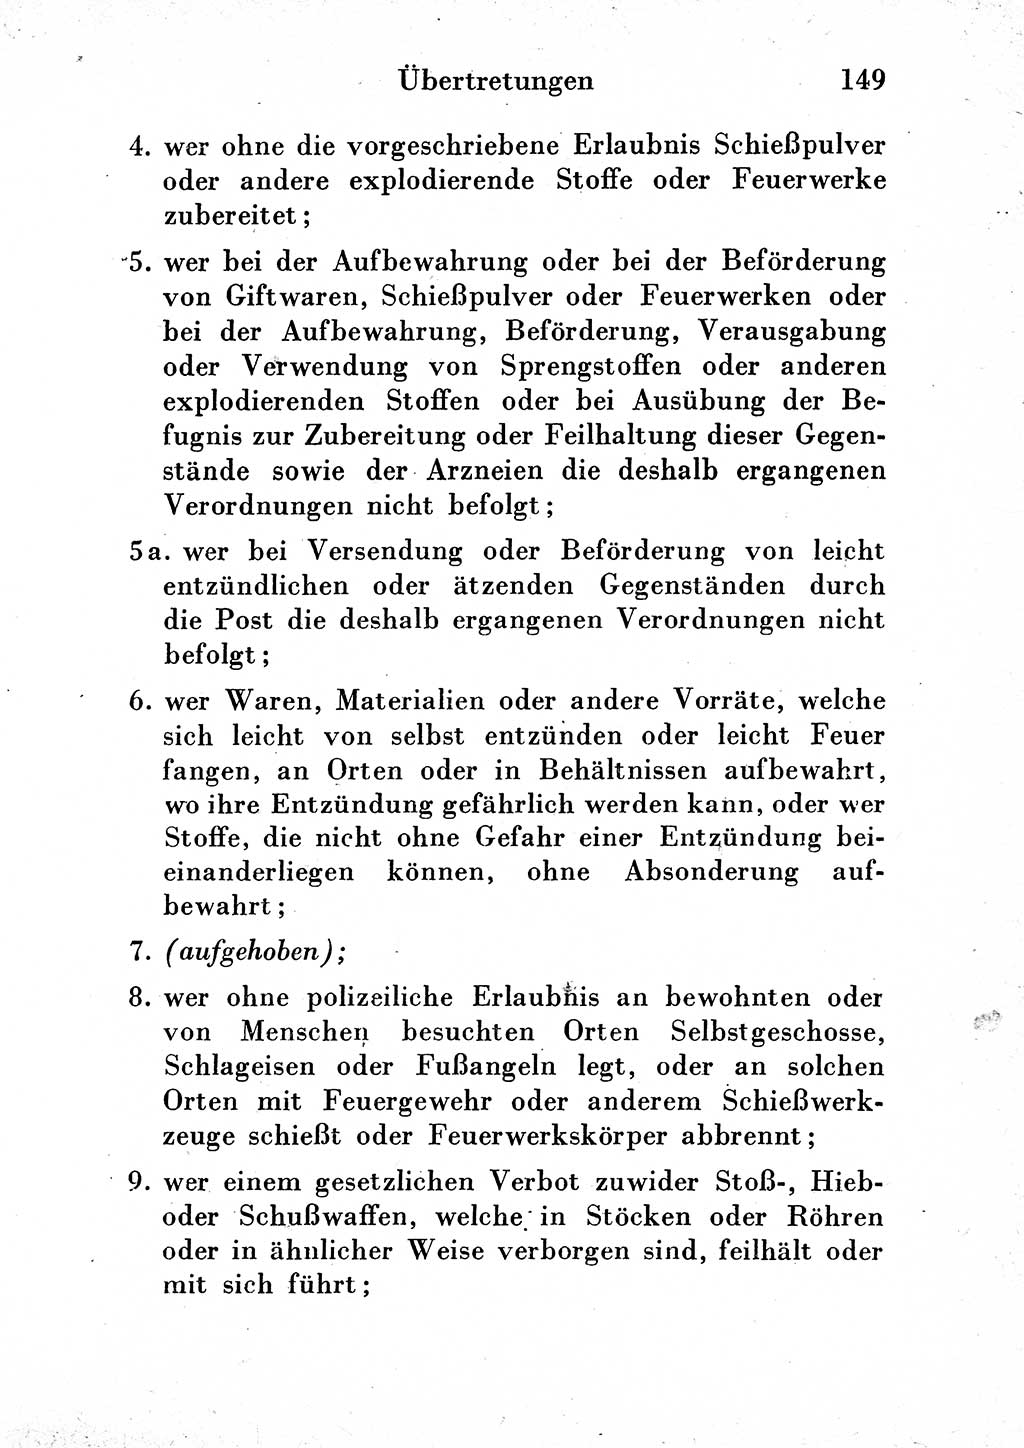 Strafgesetzbuch (StGB) und andere Strafgesetze [Deutsche Demokratische Republik (DDR)] 1954, Seite 149 (StGB Strafges. DDR 1954, S. 149)